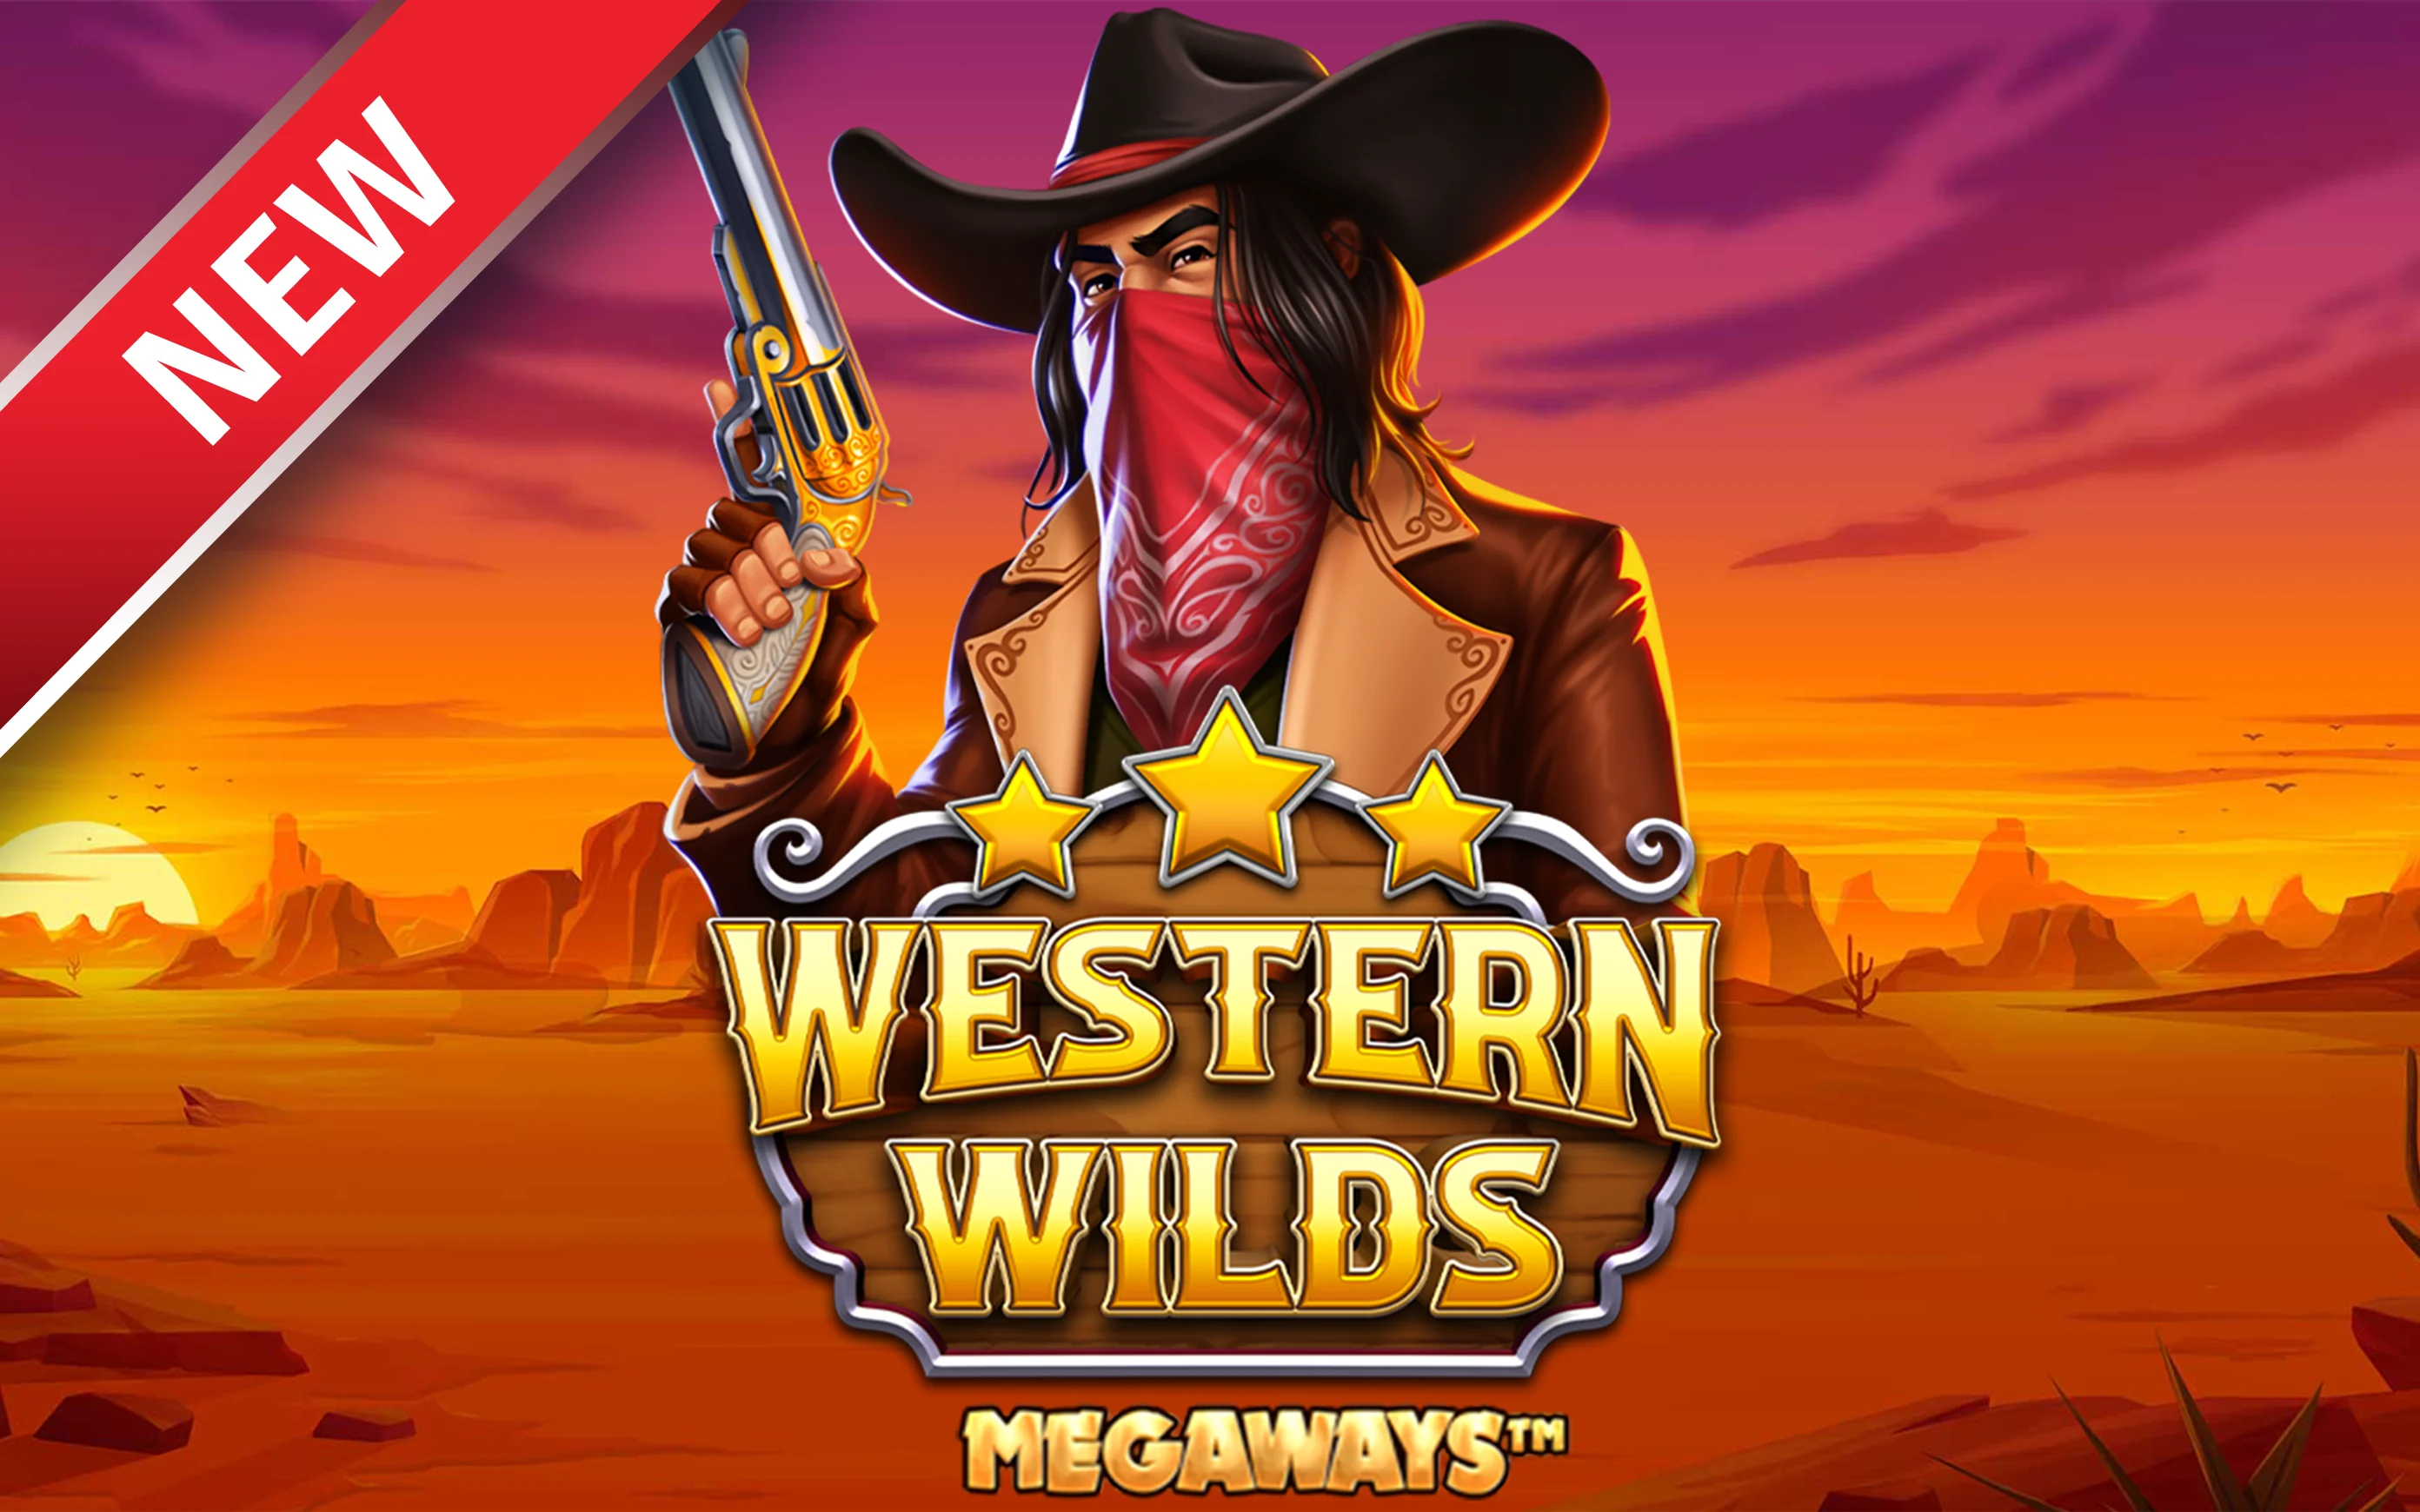 เล่น Western Wilds Megaways บนคาสิโนออนไลน์ Starcasino.be